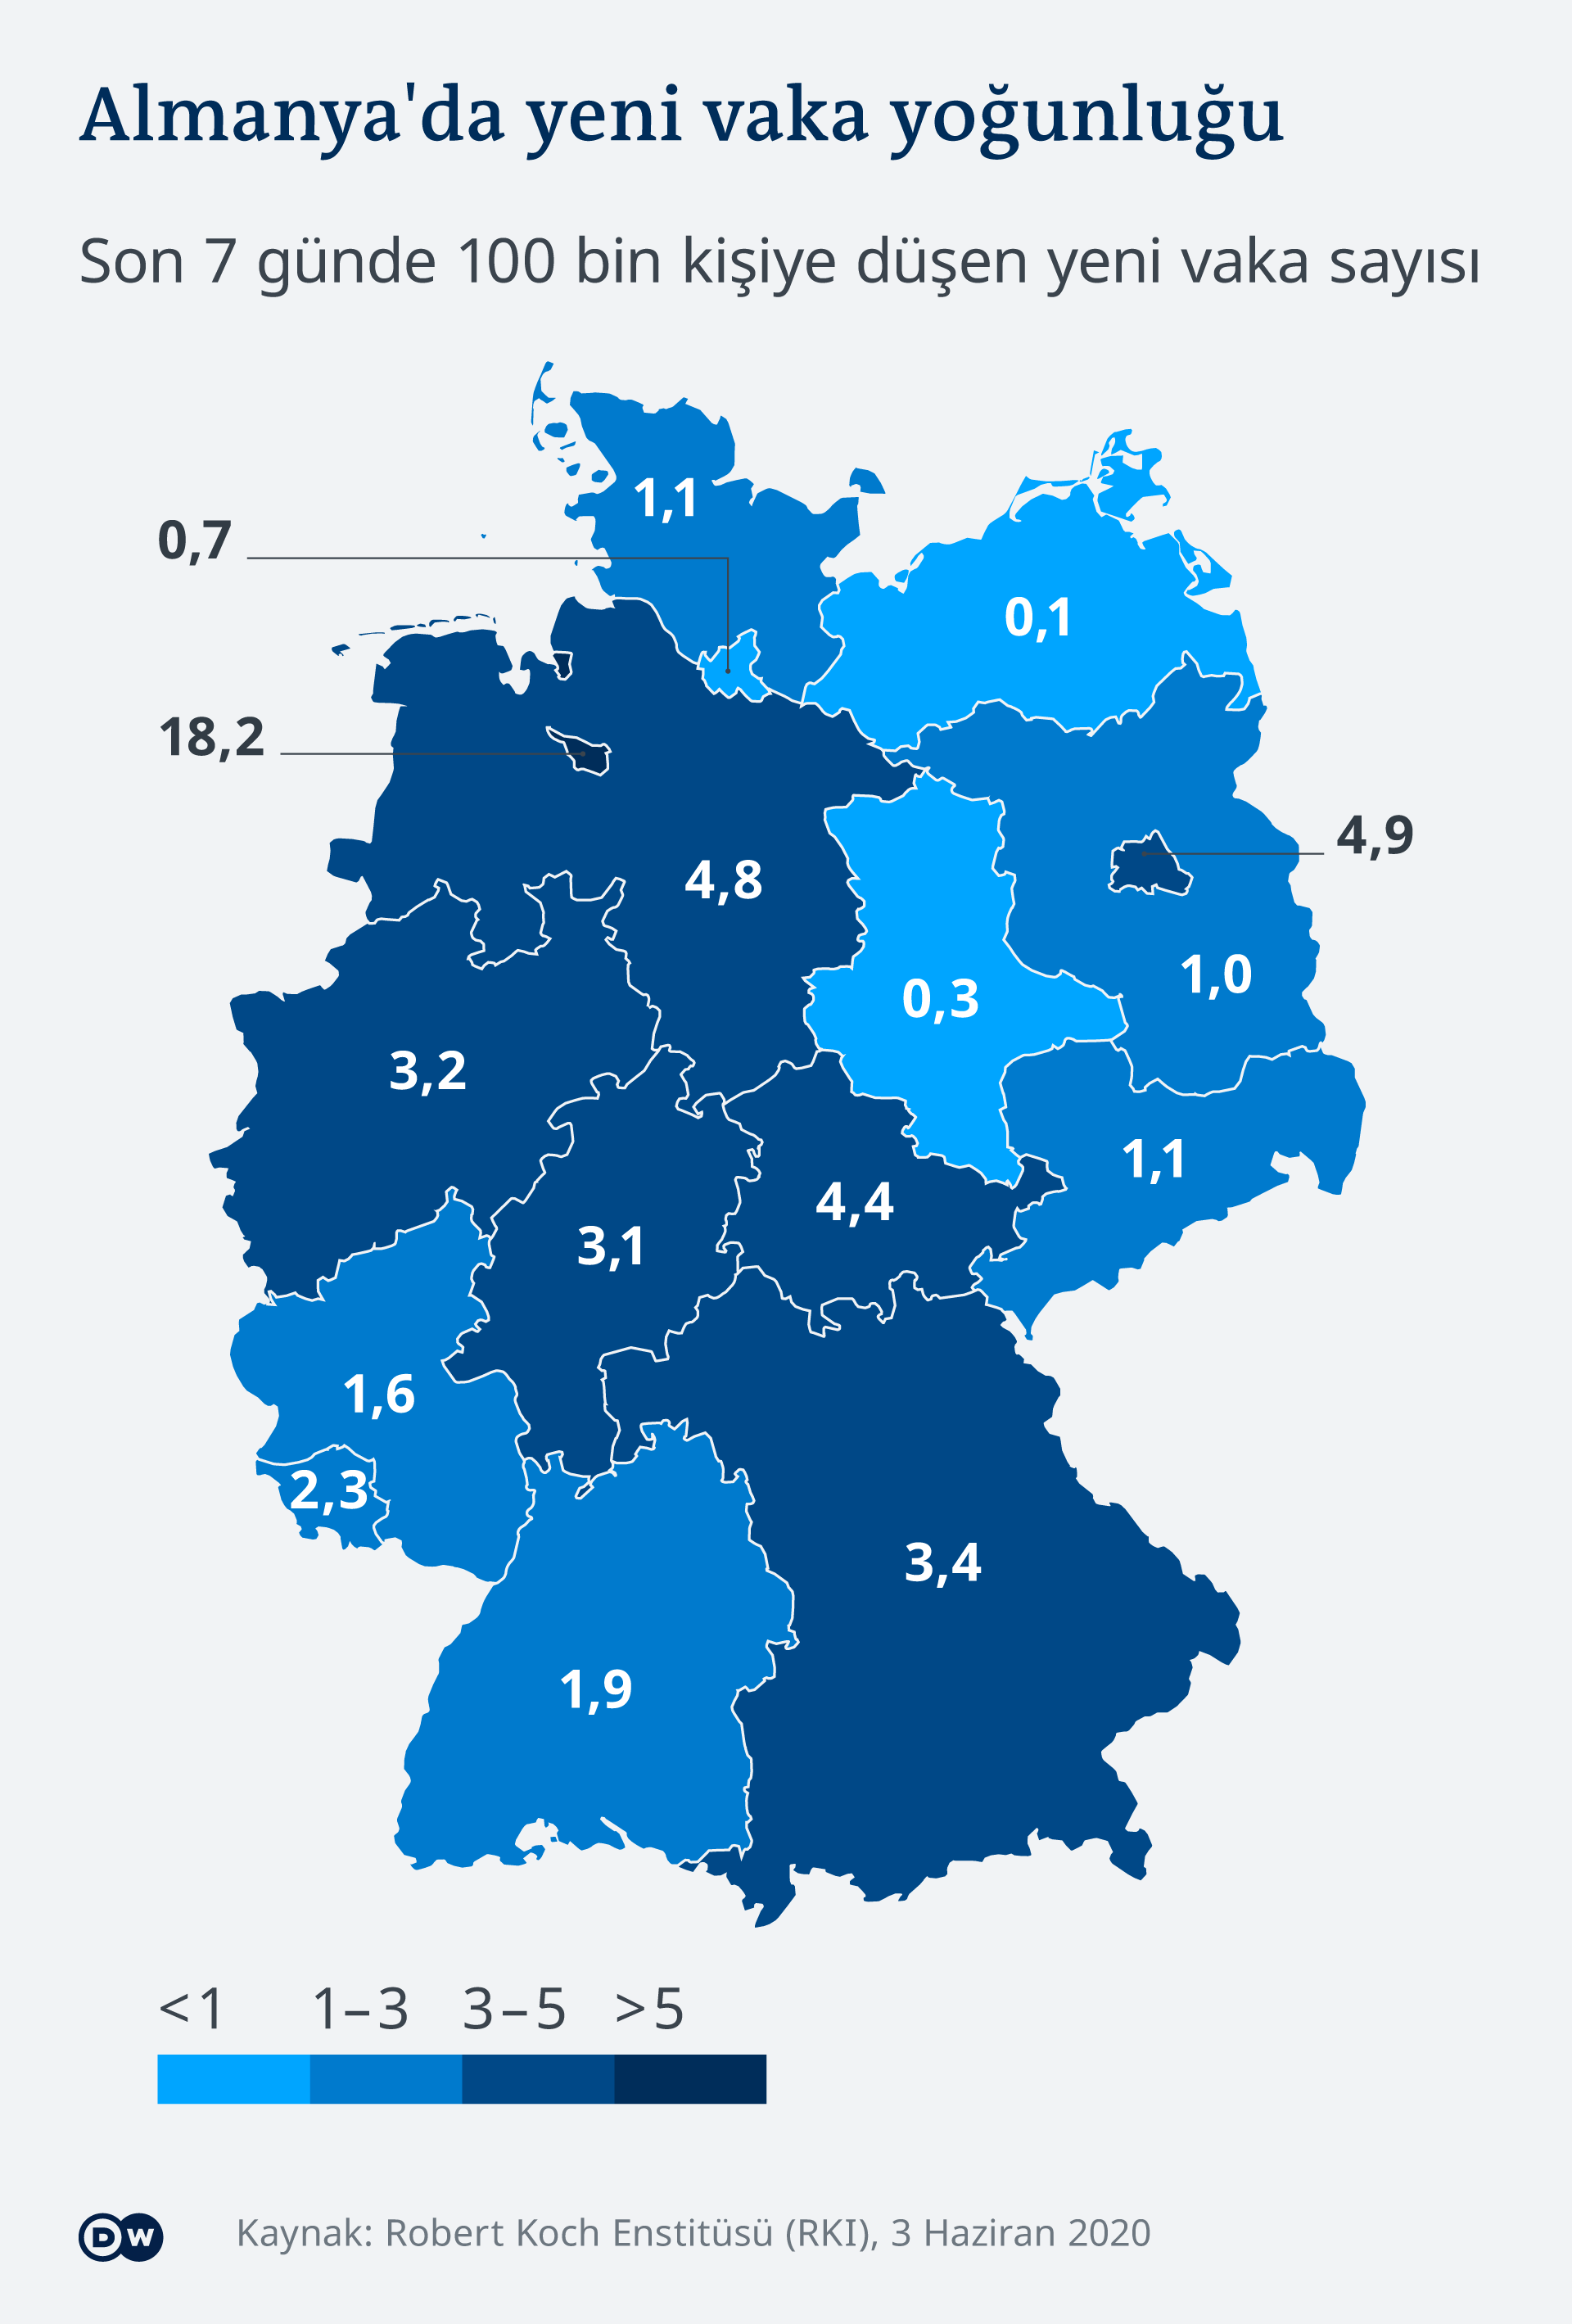 Almanya'da 7 gün içinde 100 bin kişide 50'den fazla vakanın görüldüğü eyaletlerde, kısıtlamaların geri getirilmesi planlanıyor. 